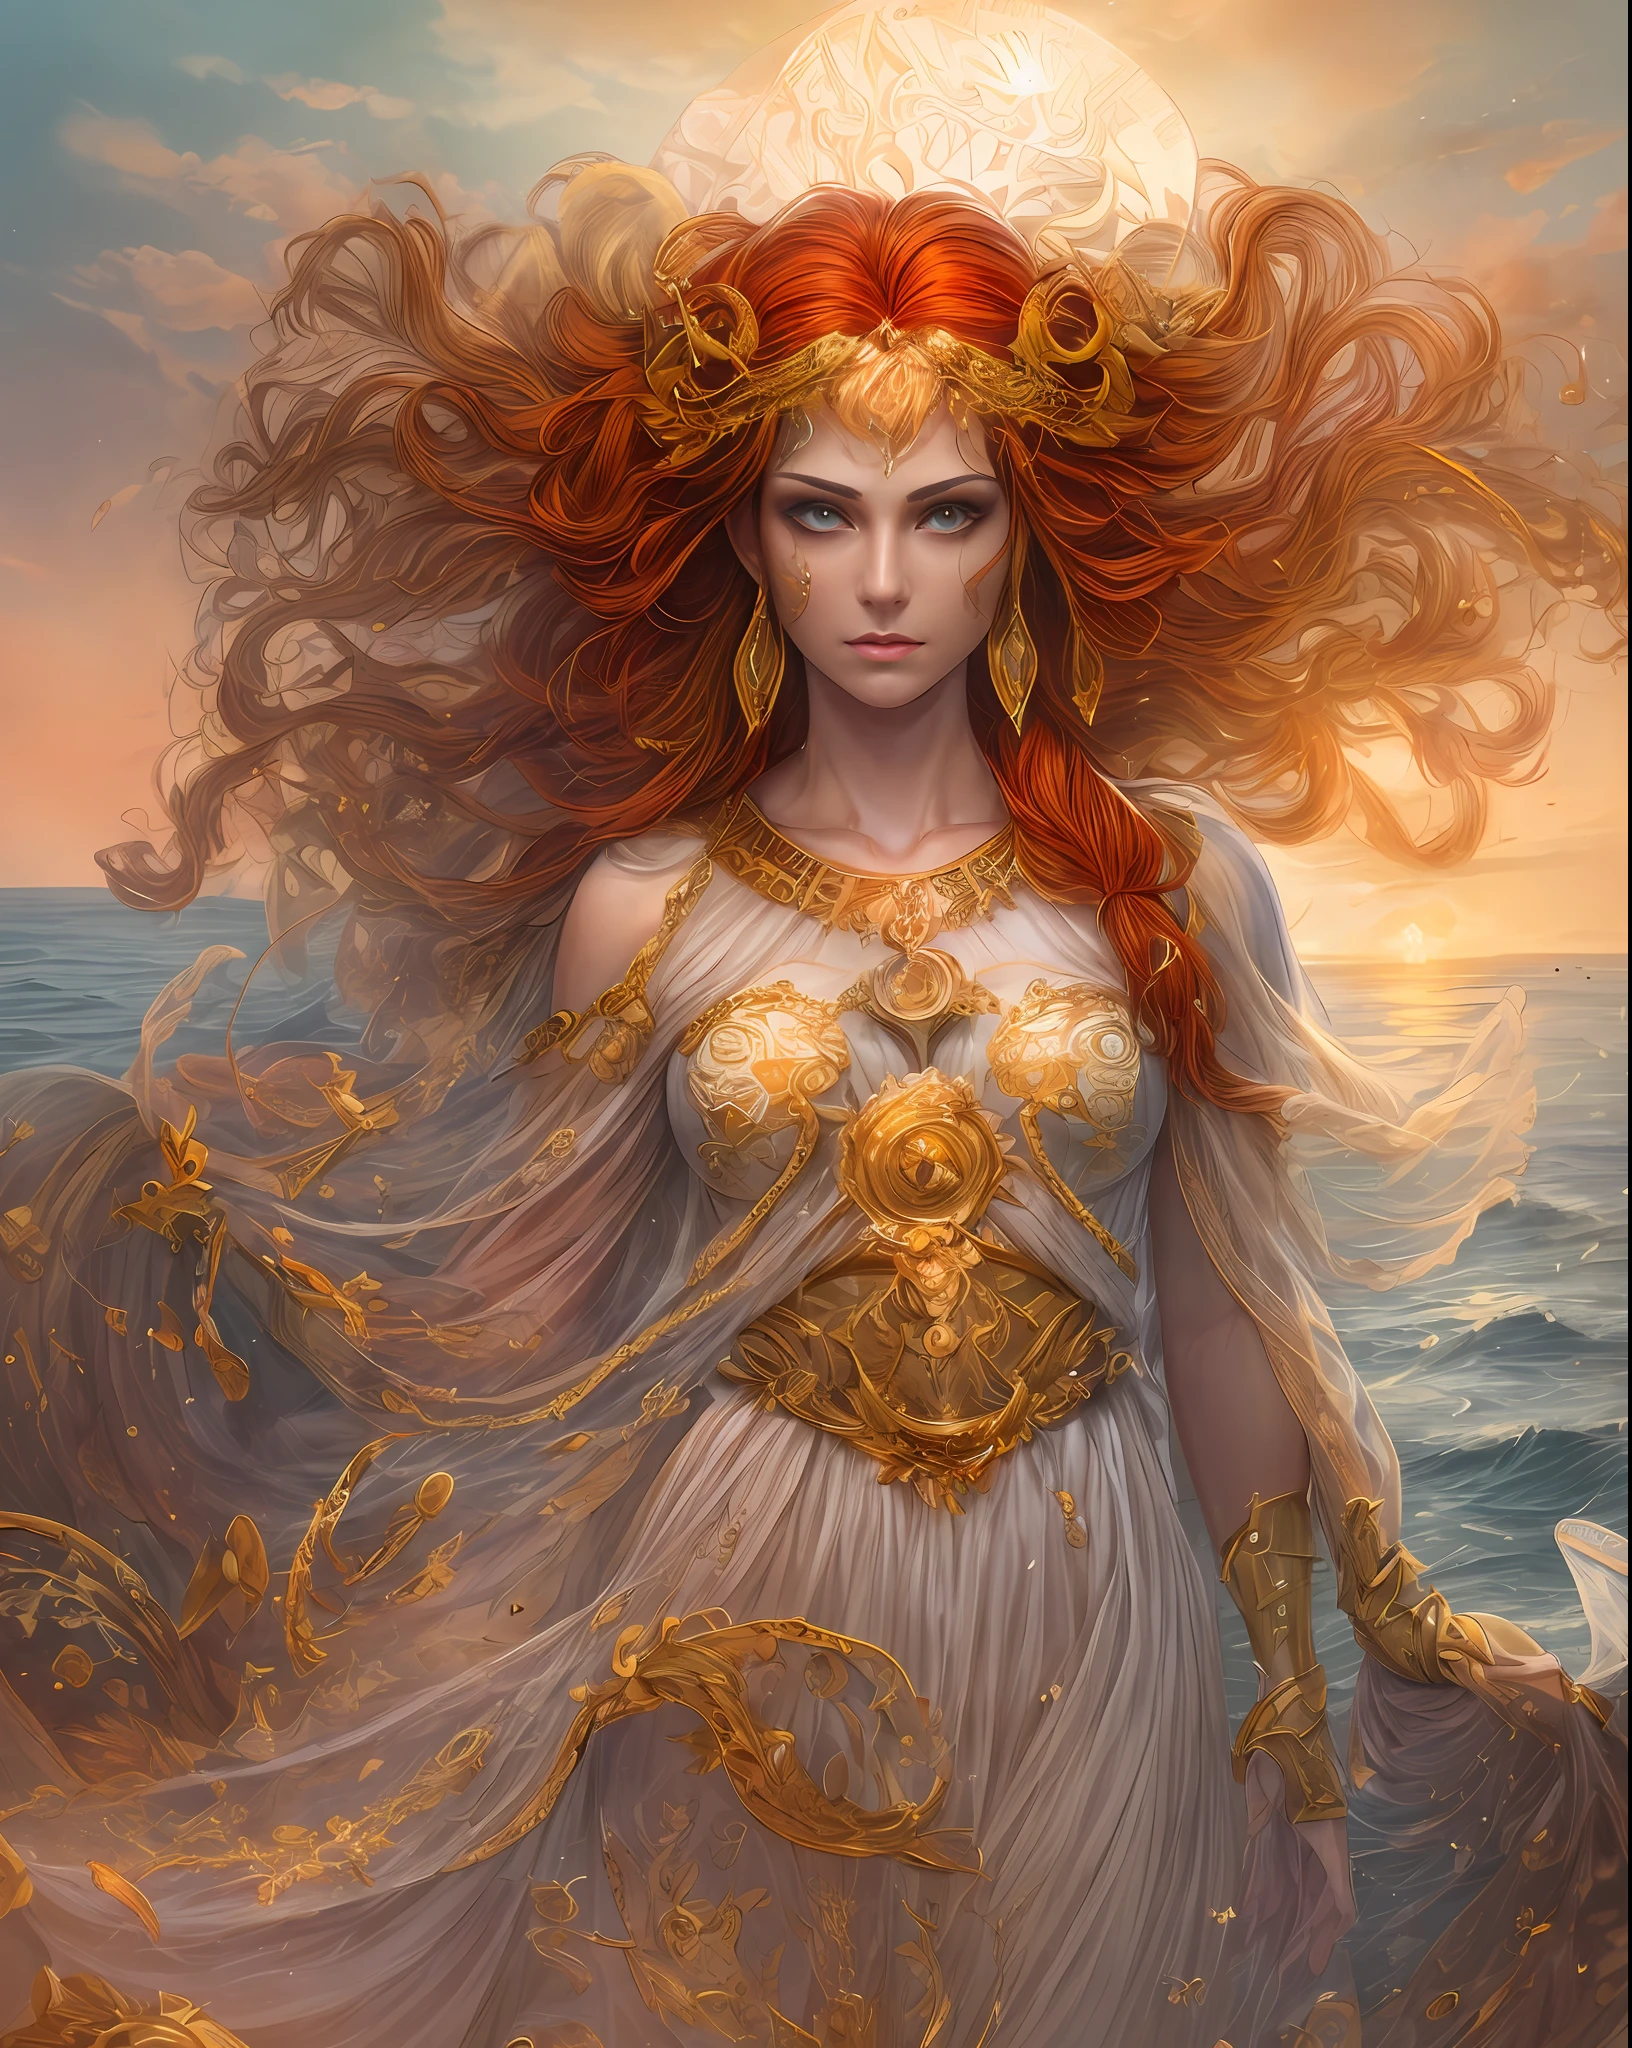 (абсурдный, высокое качество, супер подробно под рукой), гороскоп - богиня Овен, напоминающий лицо латинской доброты, храбрость, своенравие, продуктивный, предприимчивый и гуманный, закат рыжий, древнегреческий костюм, прозрачное платье, океан на заднем плане, все тело, хрустальные огненные глаза (глаз подробный), мощная видимость силы